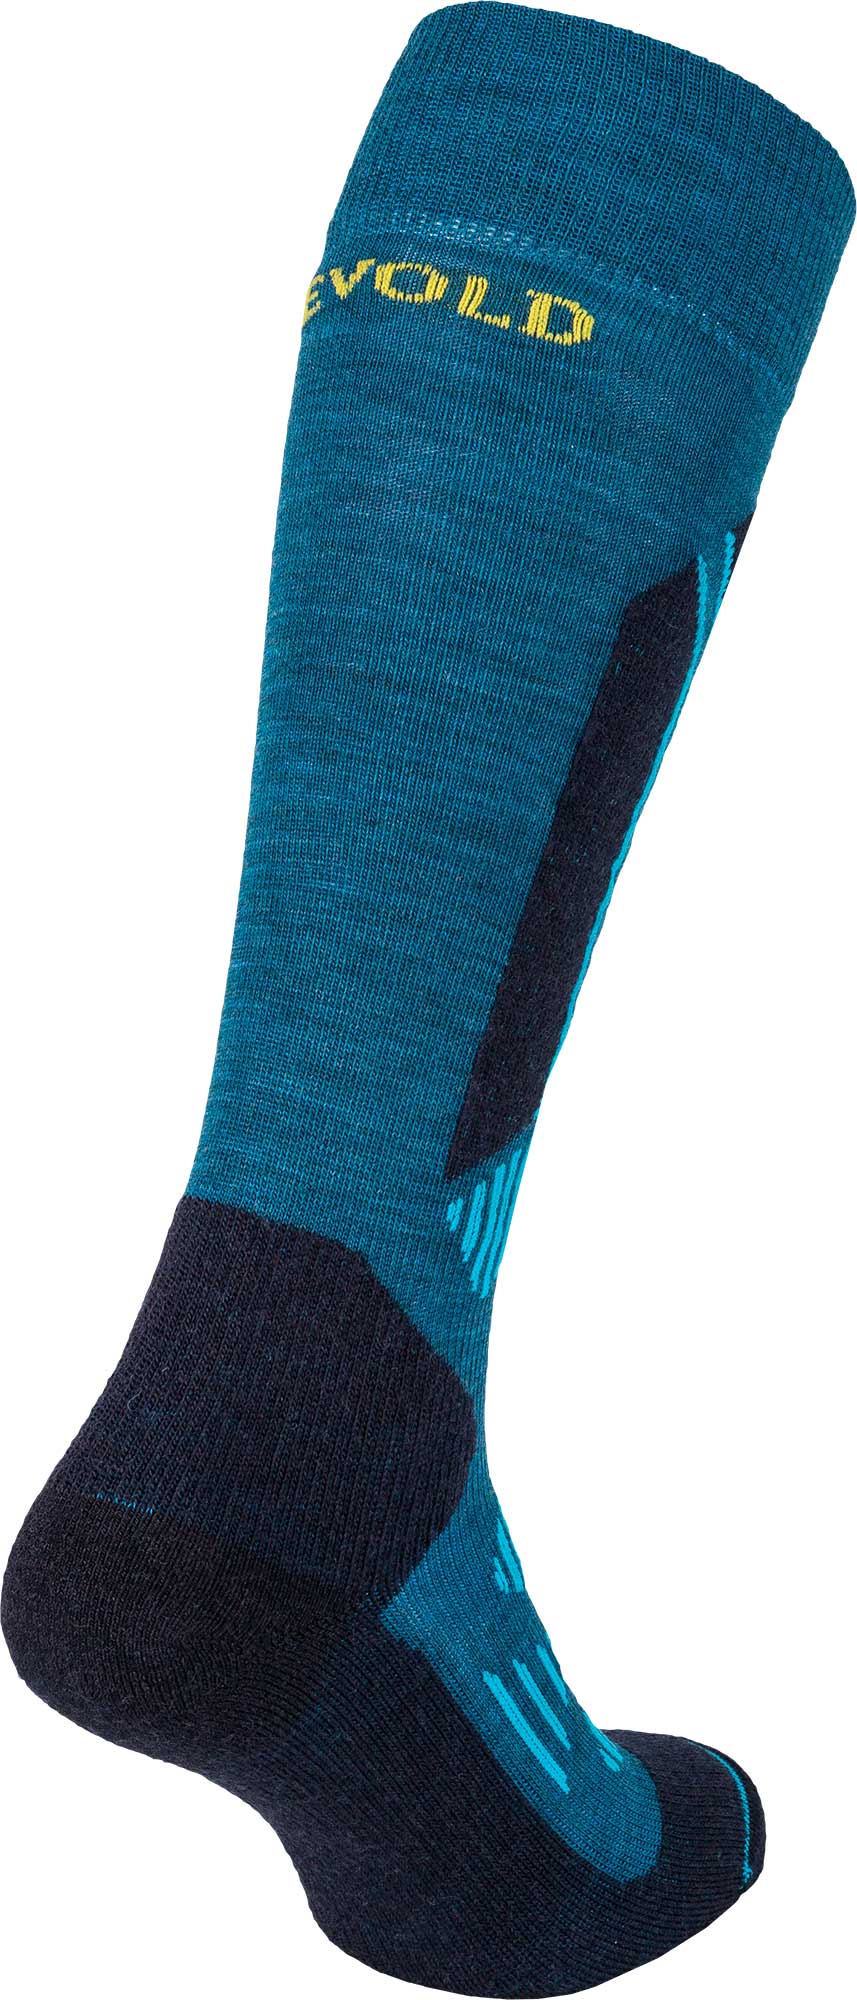 Men’s knee-high sports socks